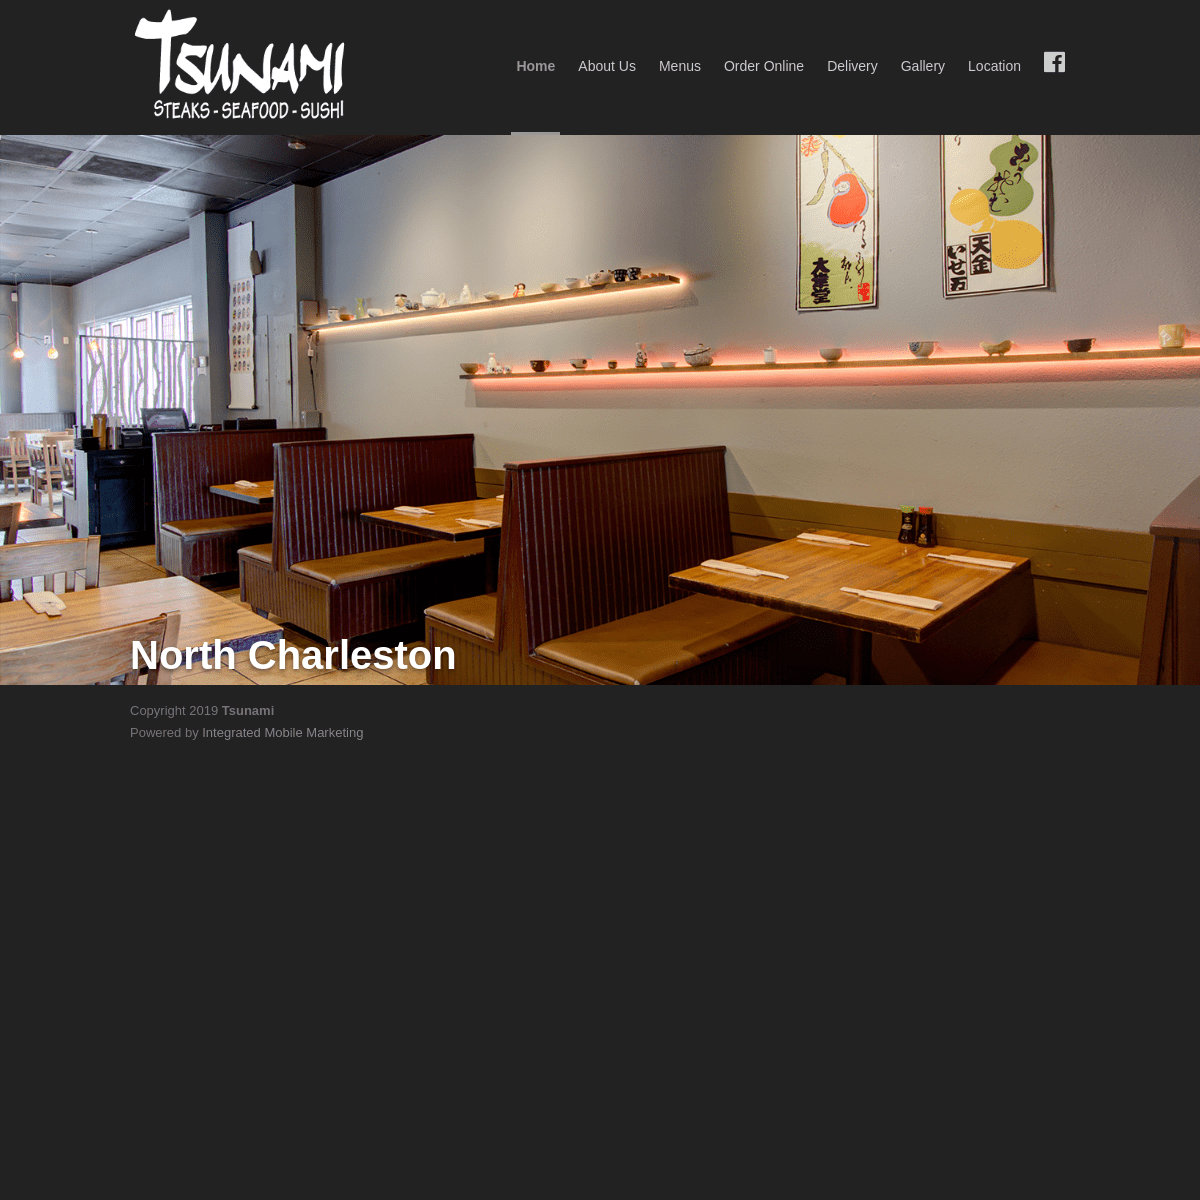 Tsunami Japanese Restaurant 